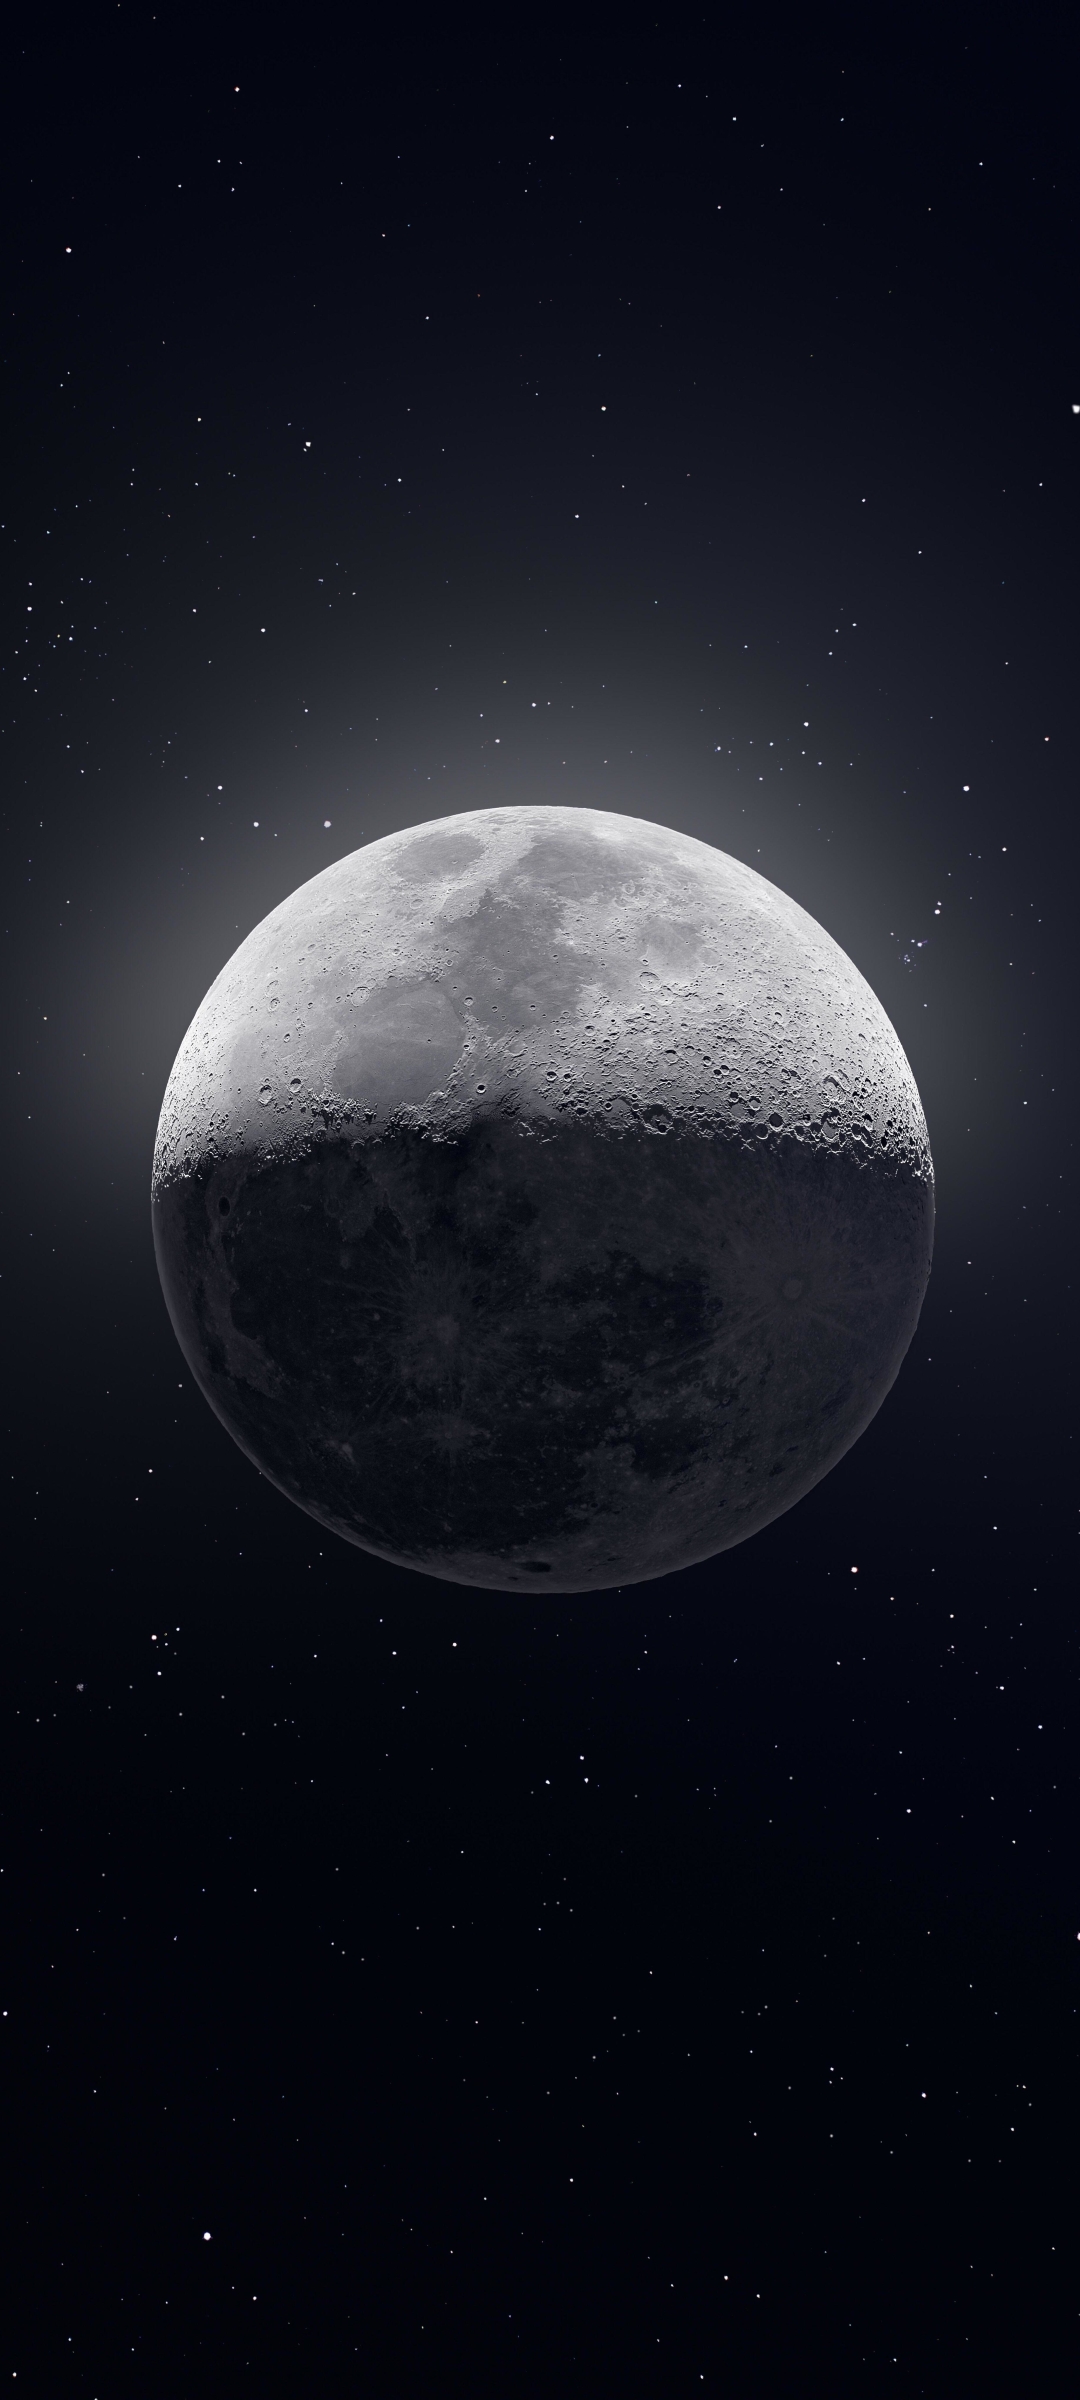 Mặt trăng là một trong những cảnh đẹp kỳ diệu mà chúng ta không thể nào bỏ qua. Và giờ đây, bạn có thể tải về miễn phí những bức hình chất lượng cao với độ phân giải 4K 8K để chiêm ngưỡng vẻ đẹp của Mặt trăng siêu nét trên màn hình điện thoại của mình.